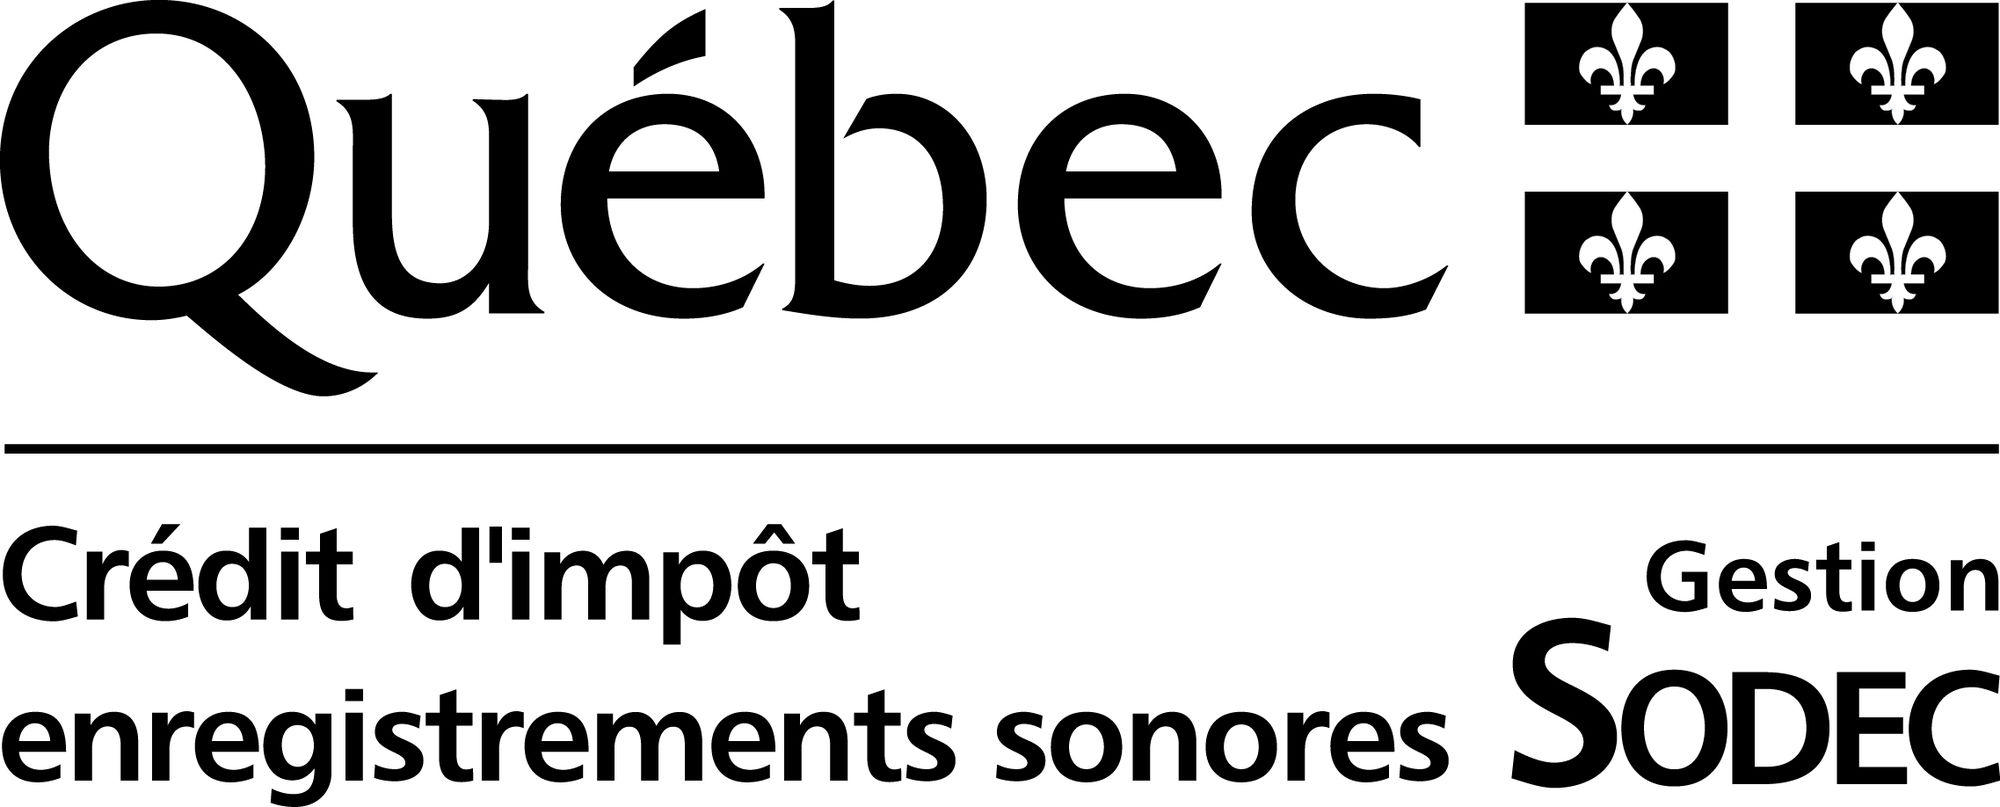 Quebec Logo - Québec | Logopedia | FANDOM powered by Wikia